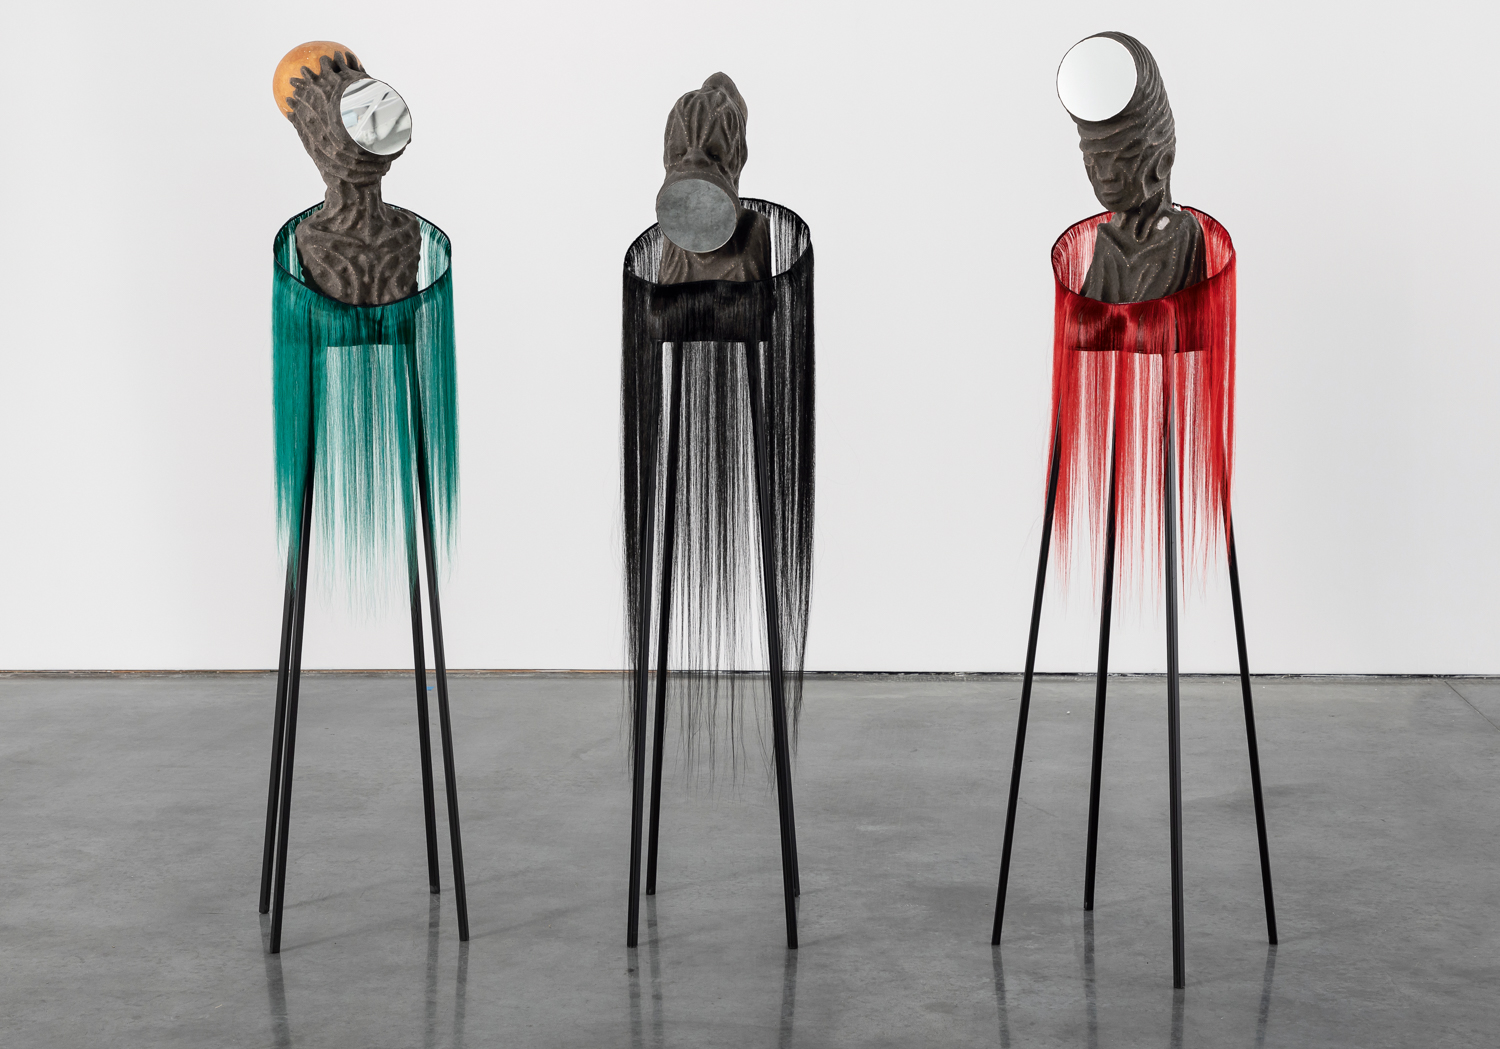 Three sculptures by Wangechi Mutu